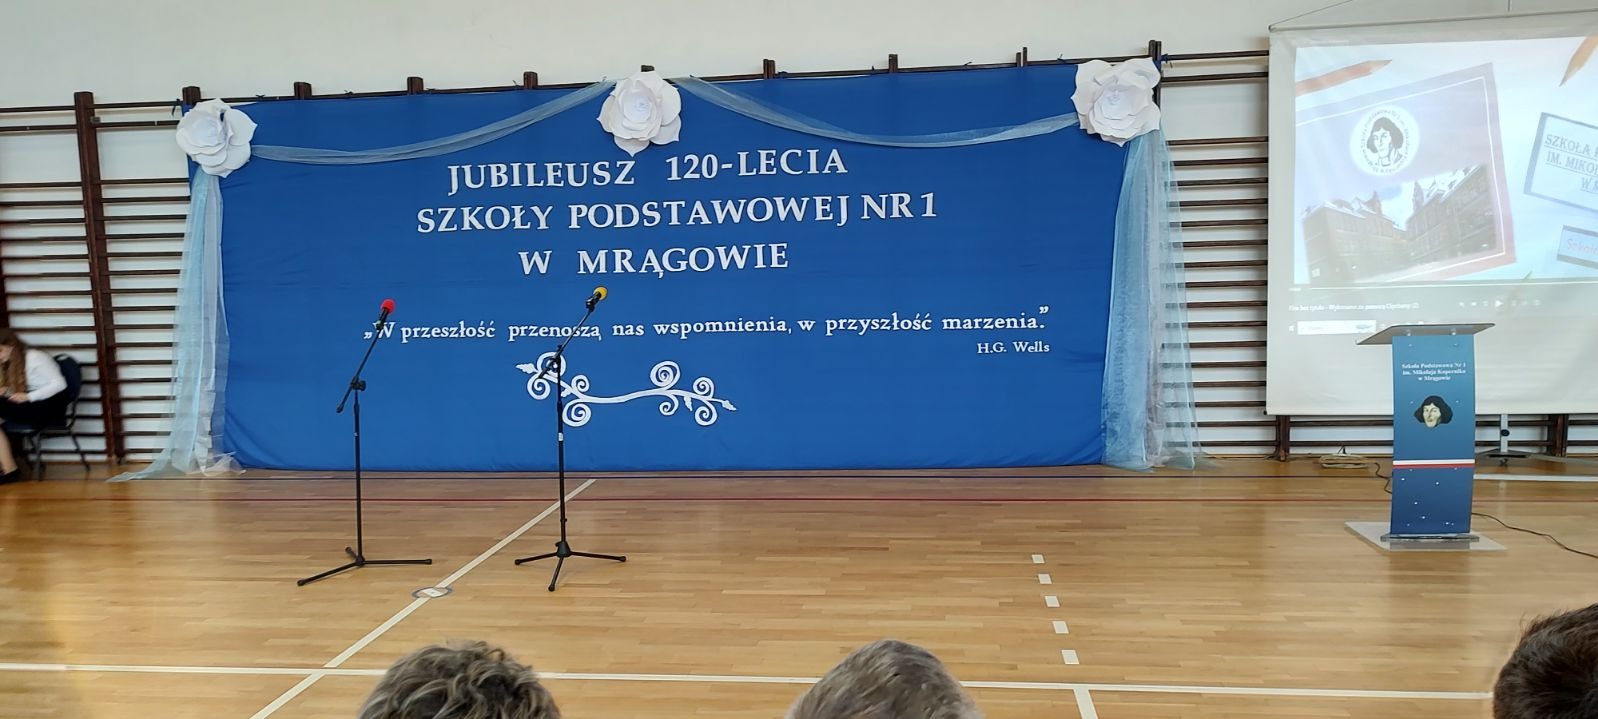 Jubileusz 120 - Lecia Szkoły Podstawowej Nr 1 w Mrągowie  - Obrazek 5